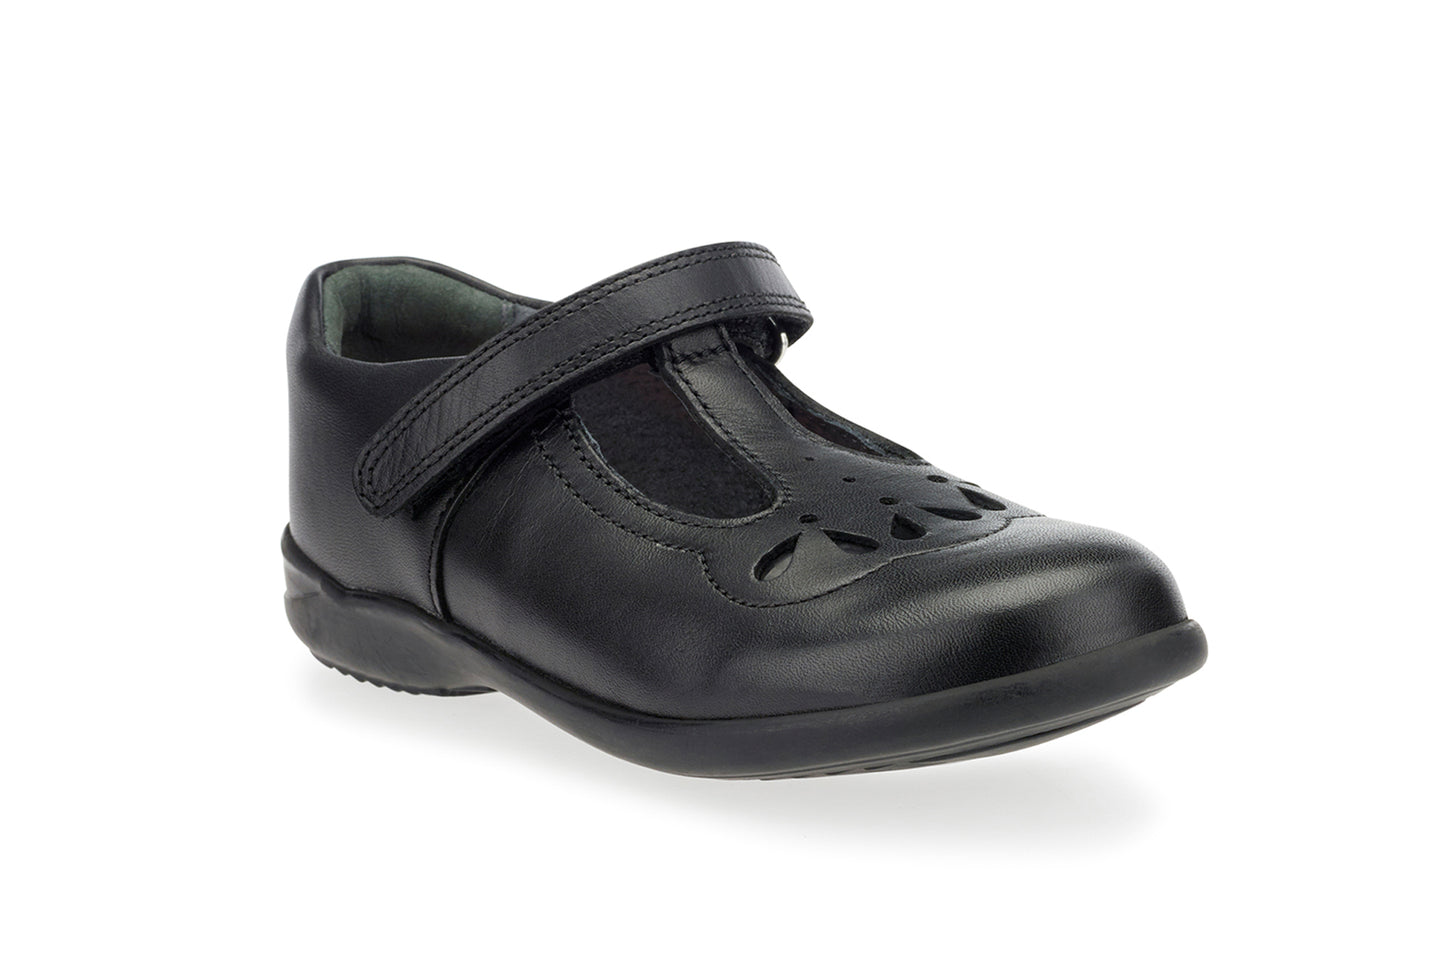 Poppy Black Leather T-bar Girls School Shoe